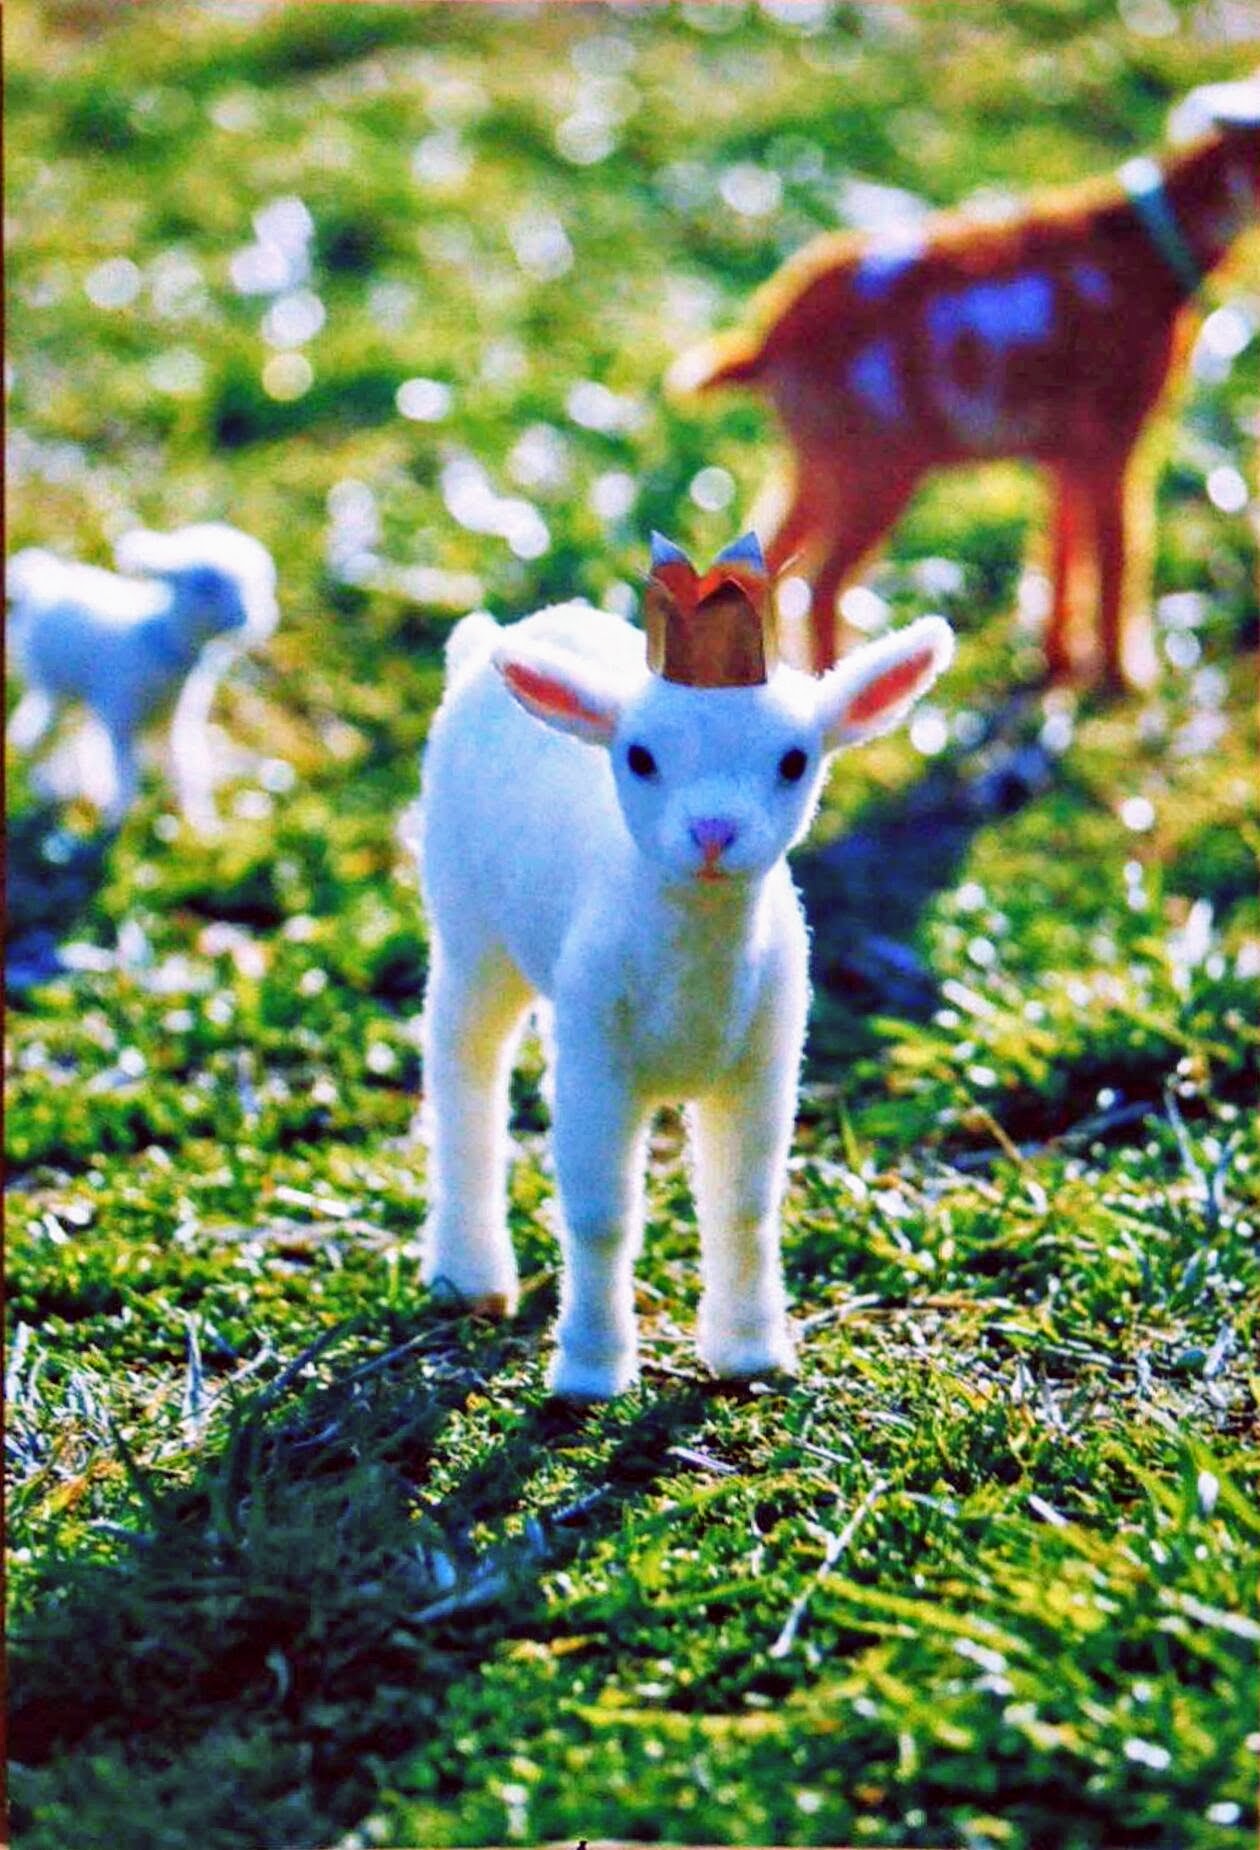 羊毛フェルトで出来たリアルでかわいい動物たちに癒される 愛知川びんてまりの館にて Yoshinobu 羊毛フェルトの動物たち が開催中です 滋賀のママがイベント 育児 遊び 学びを発信 シガマンマ ピースマム